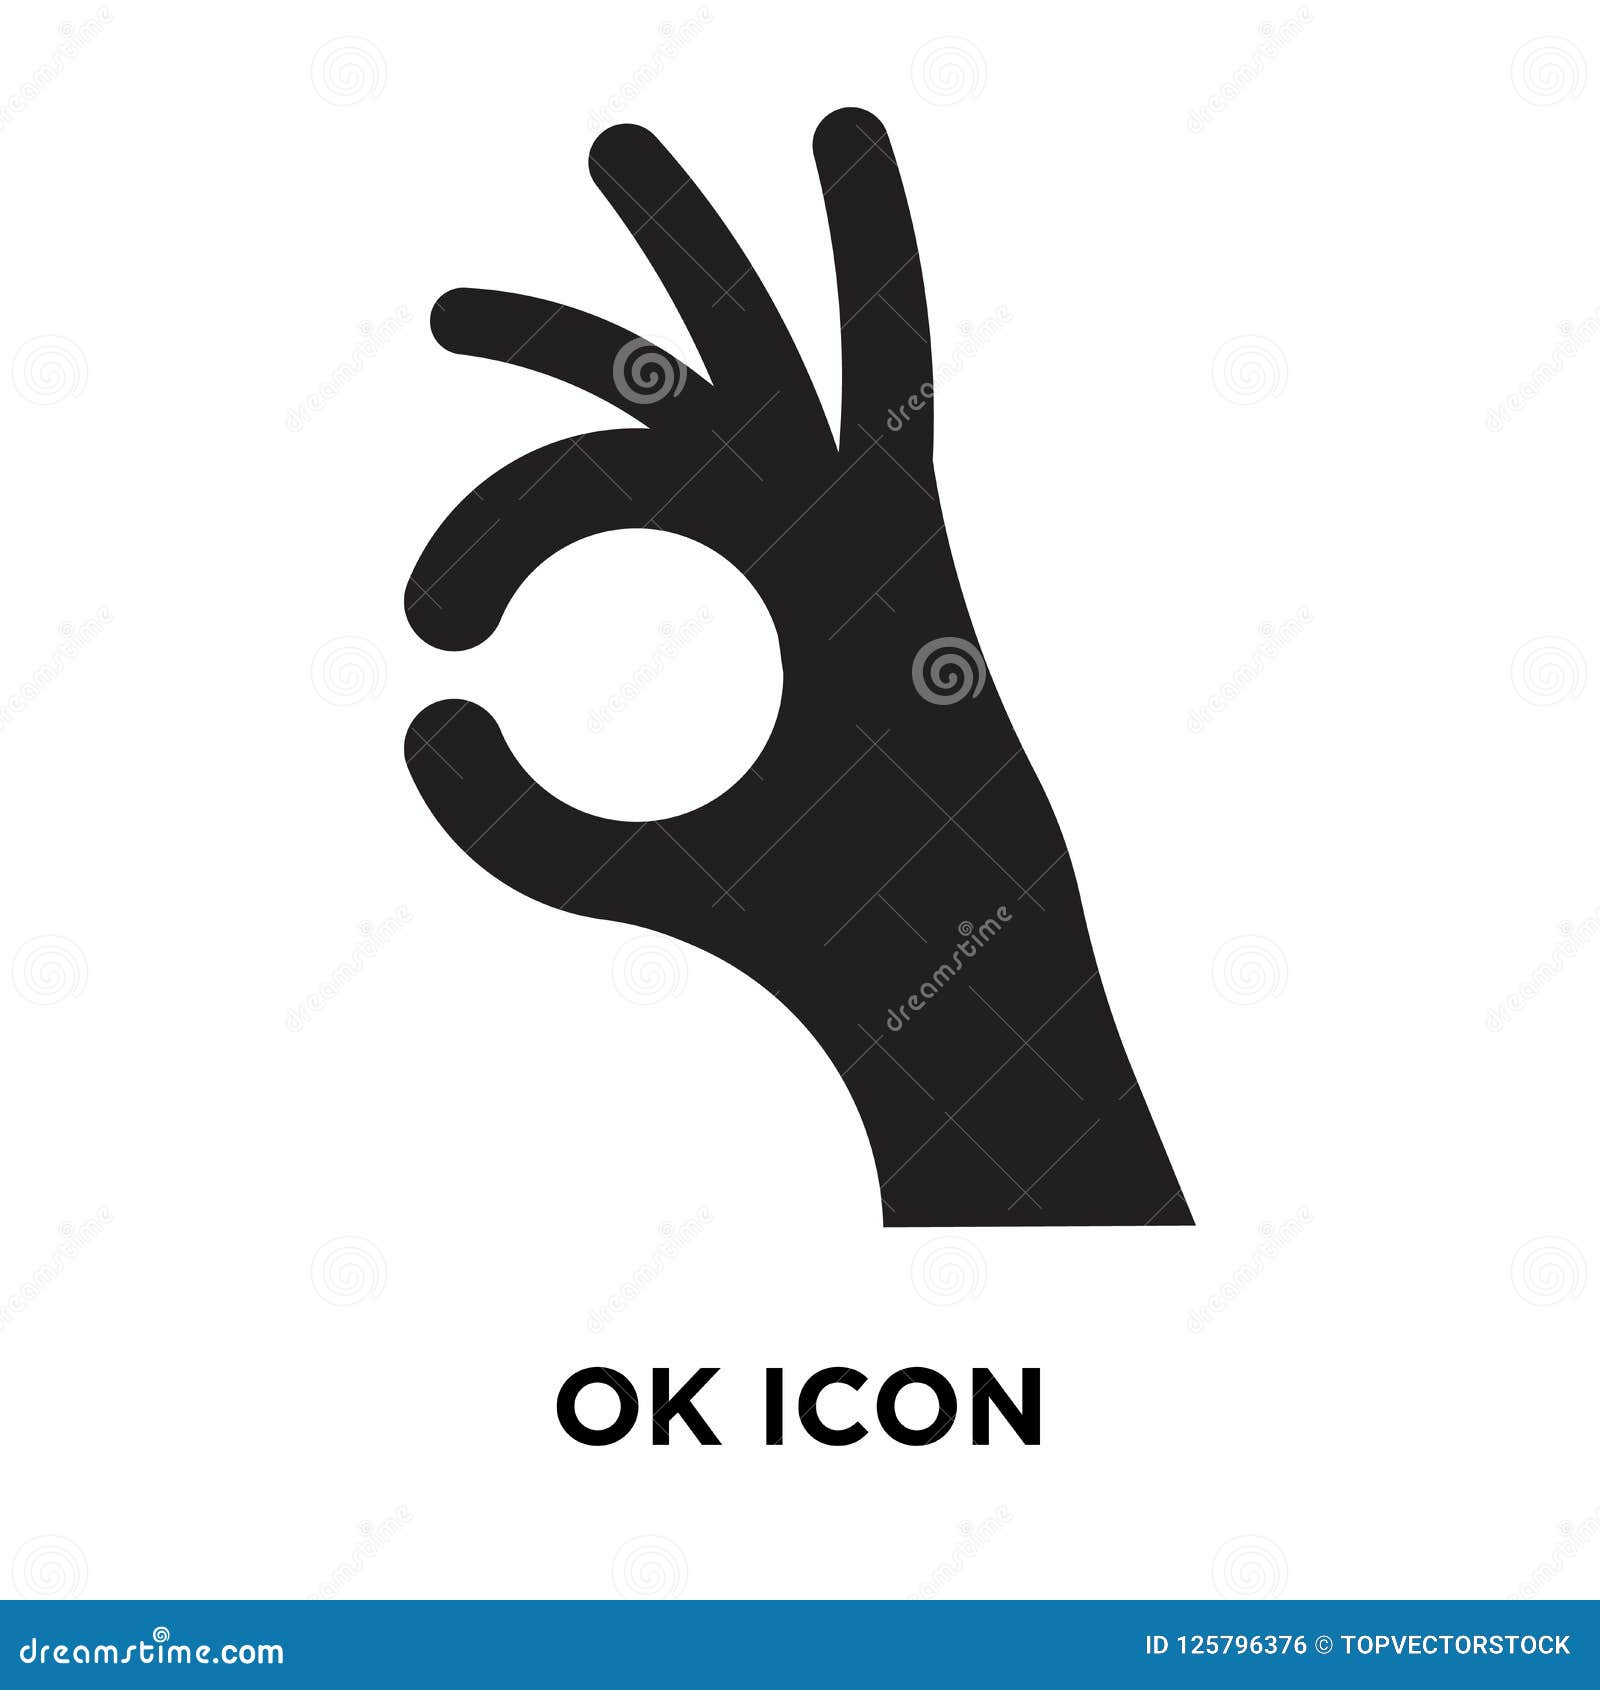 ok icon   on white background, logo concept of ok